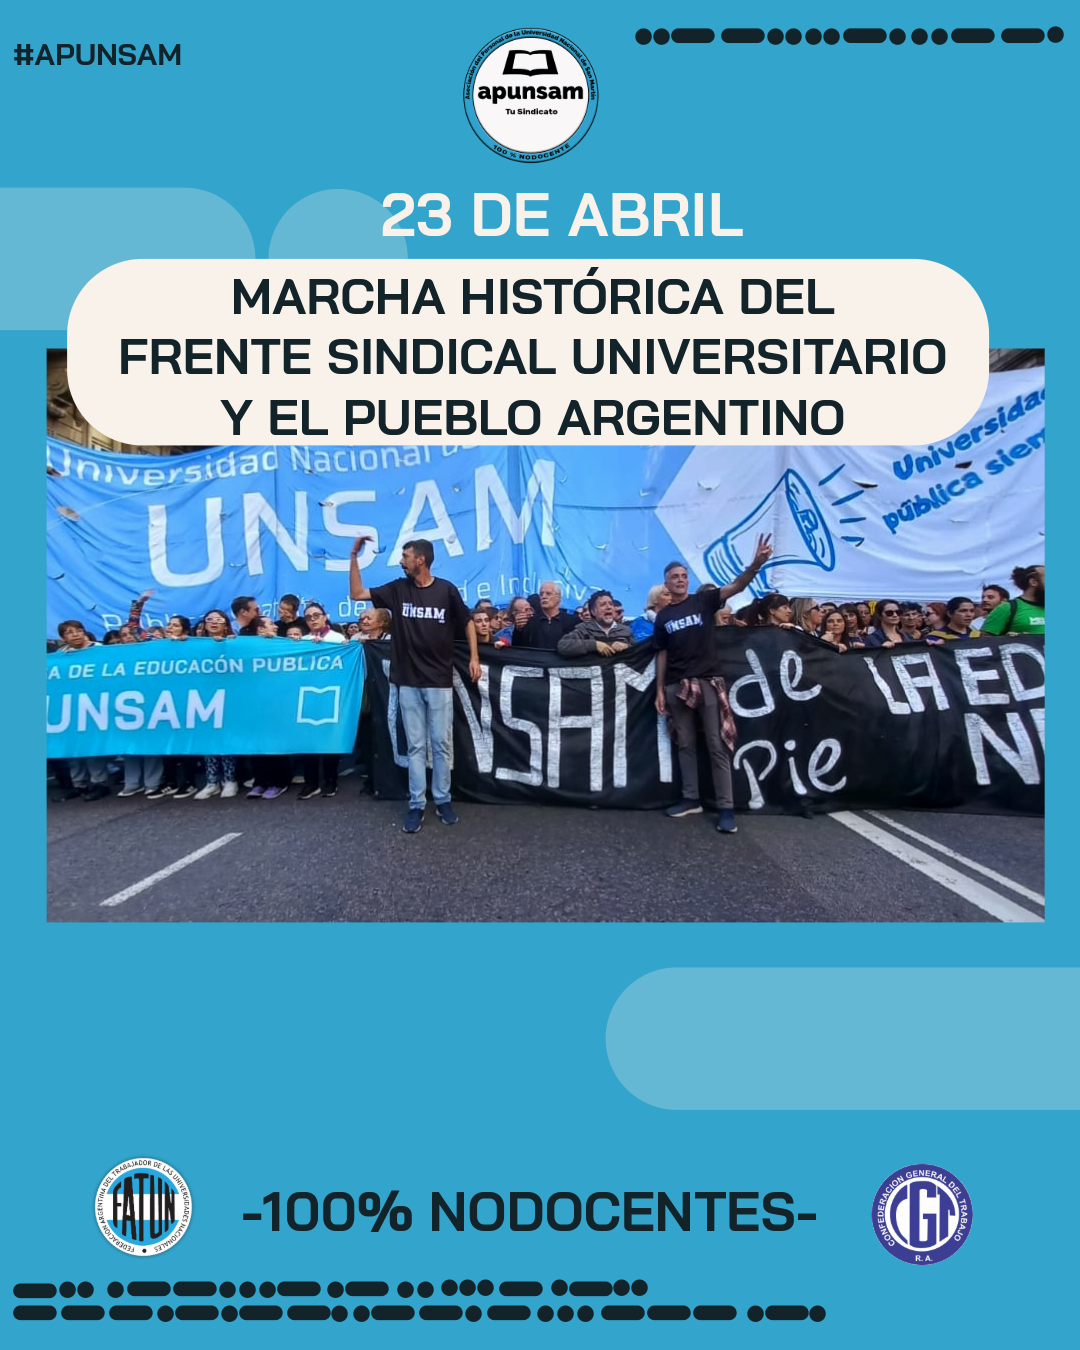 Marcha histórica en defensa de la Universidad Pública, Gratuita, de Calidad y Co-Gobernada